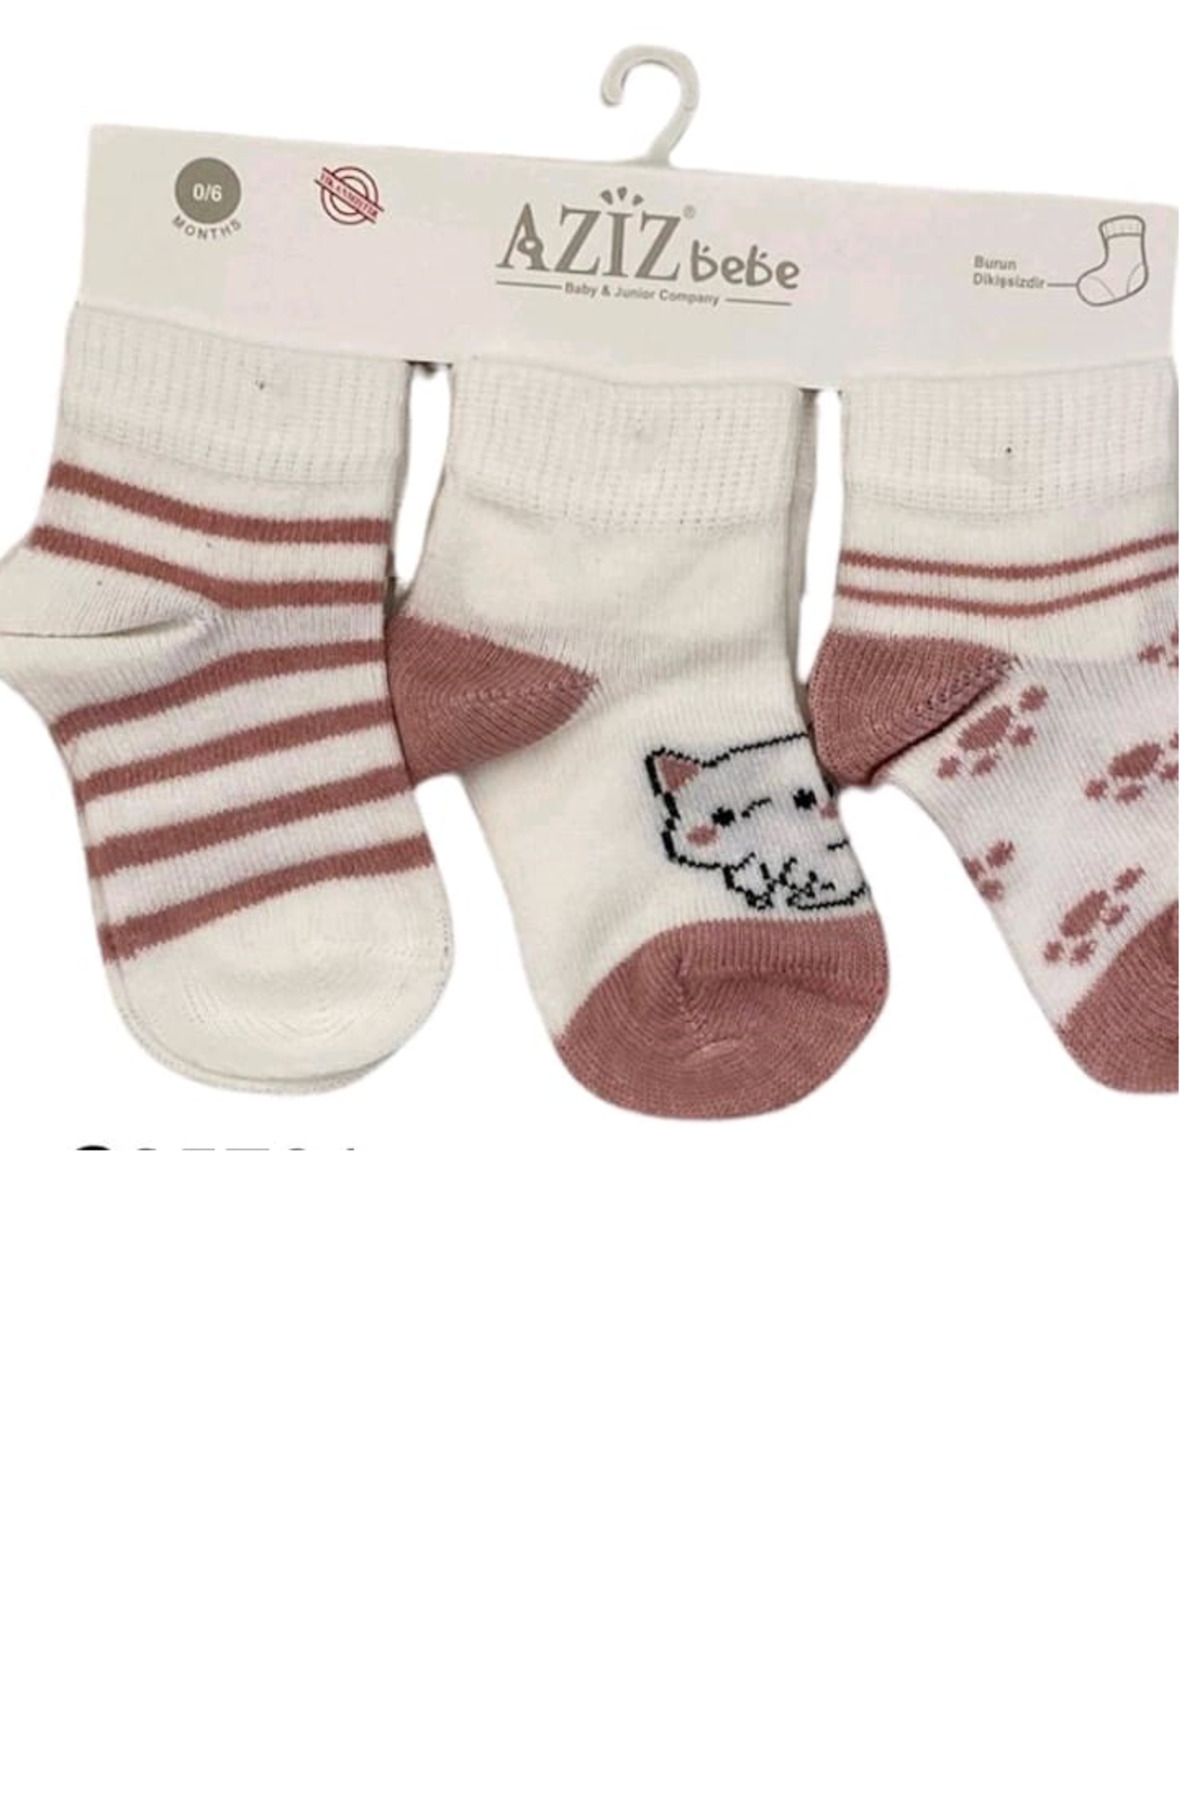 Aziz Bebe Üçlü Kız Bebek Çorap